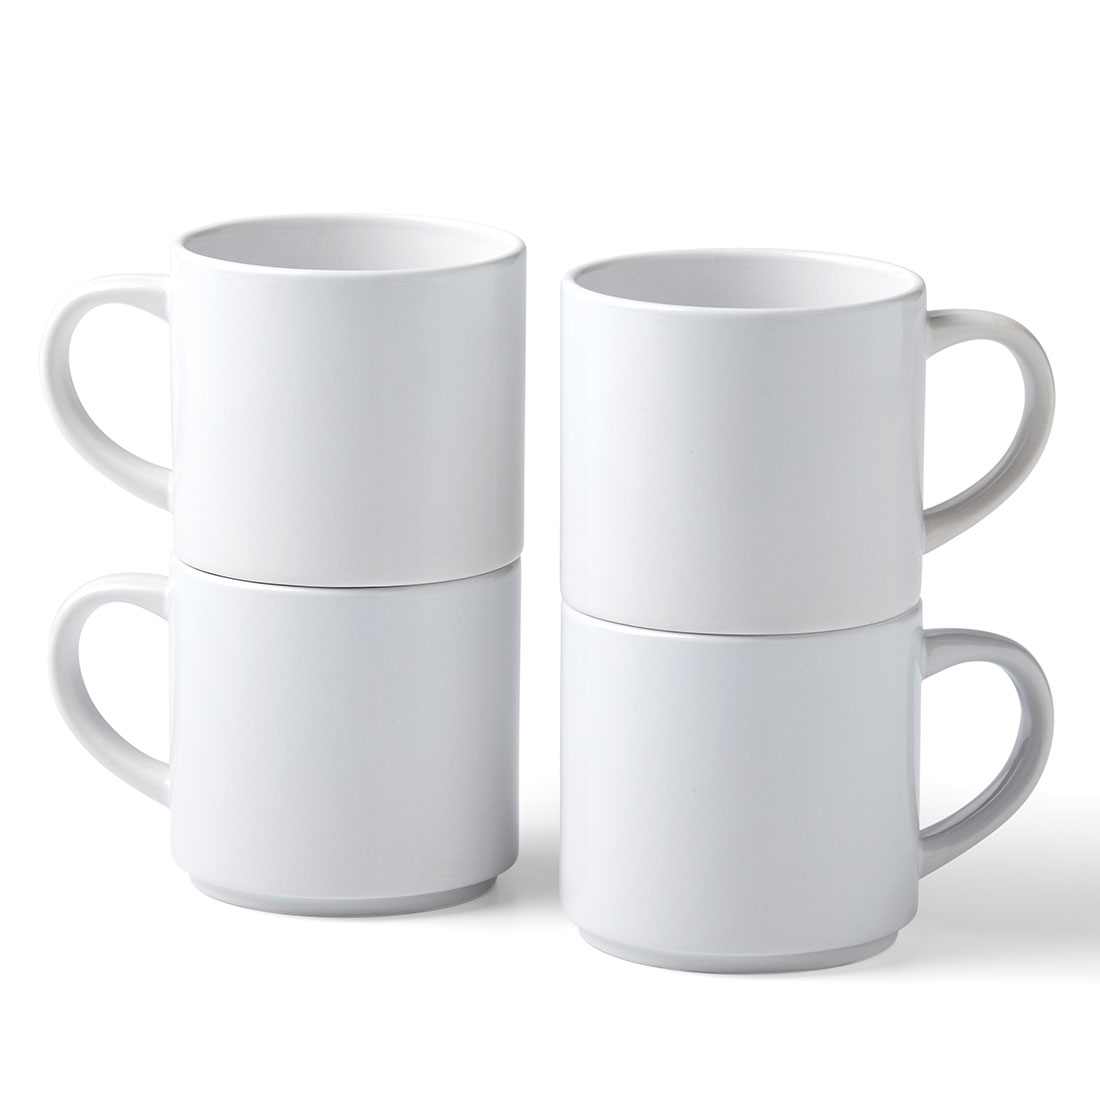 Cricut Stackable Mugs: Reach new heights of inspiration – Cricut